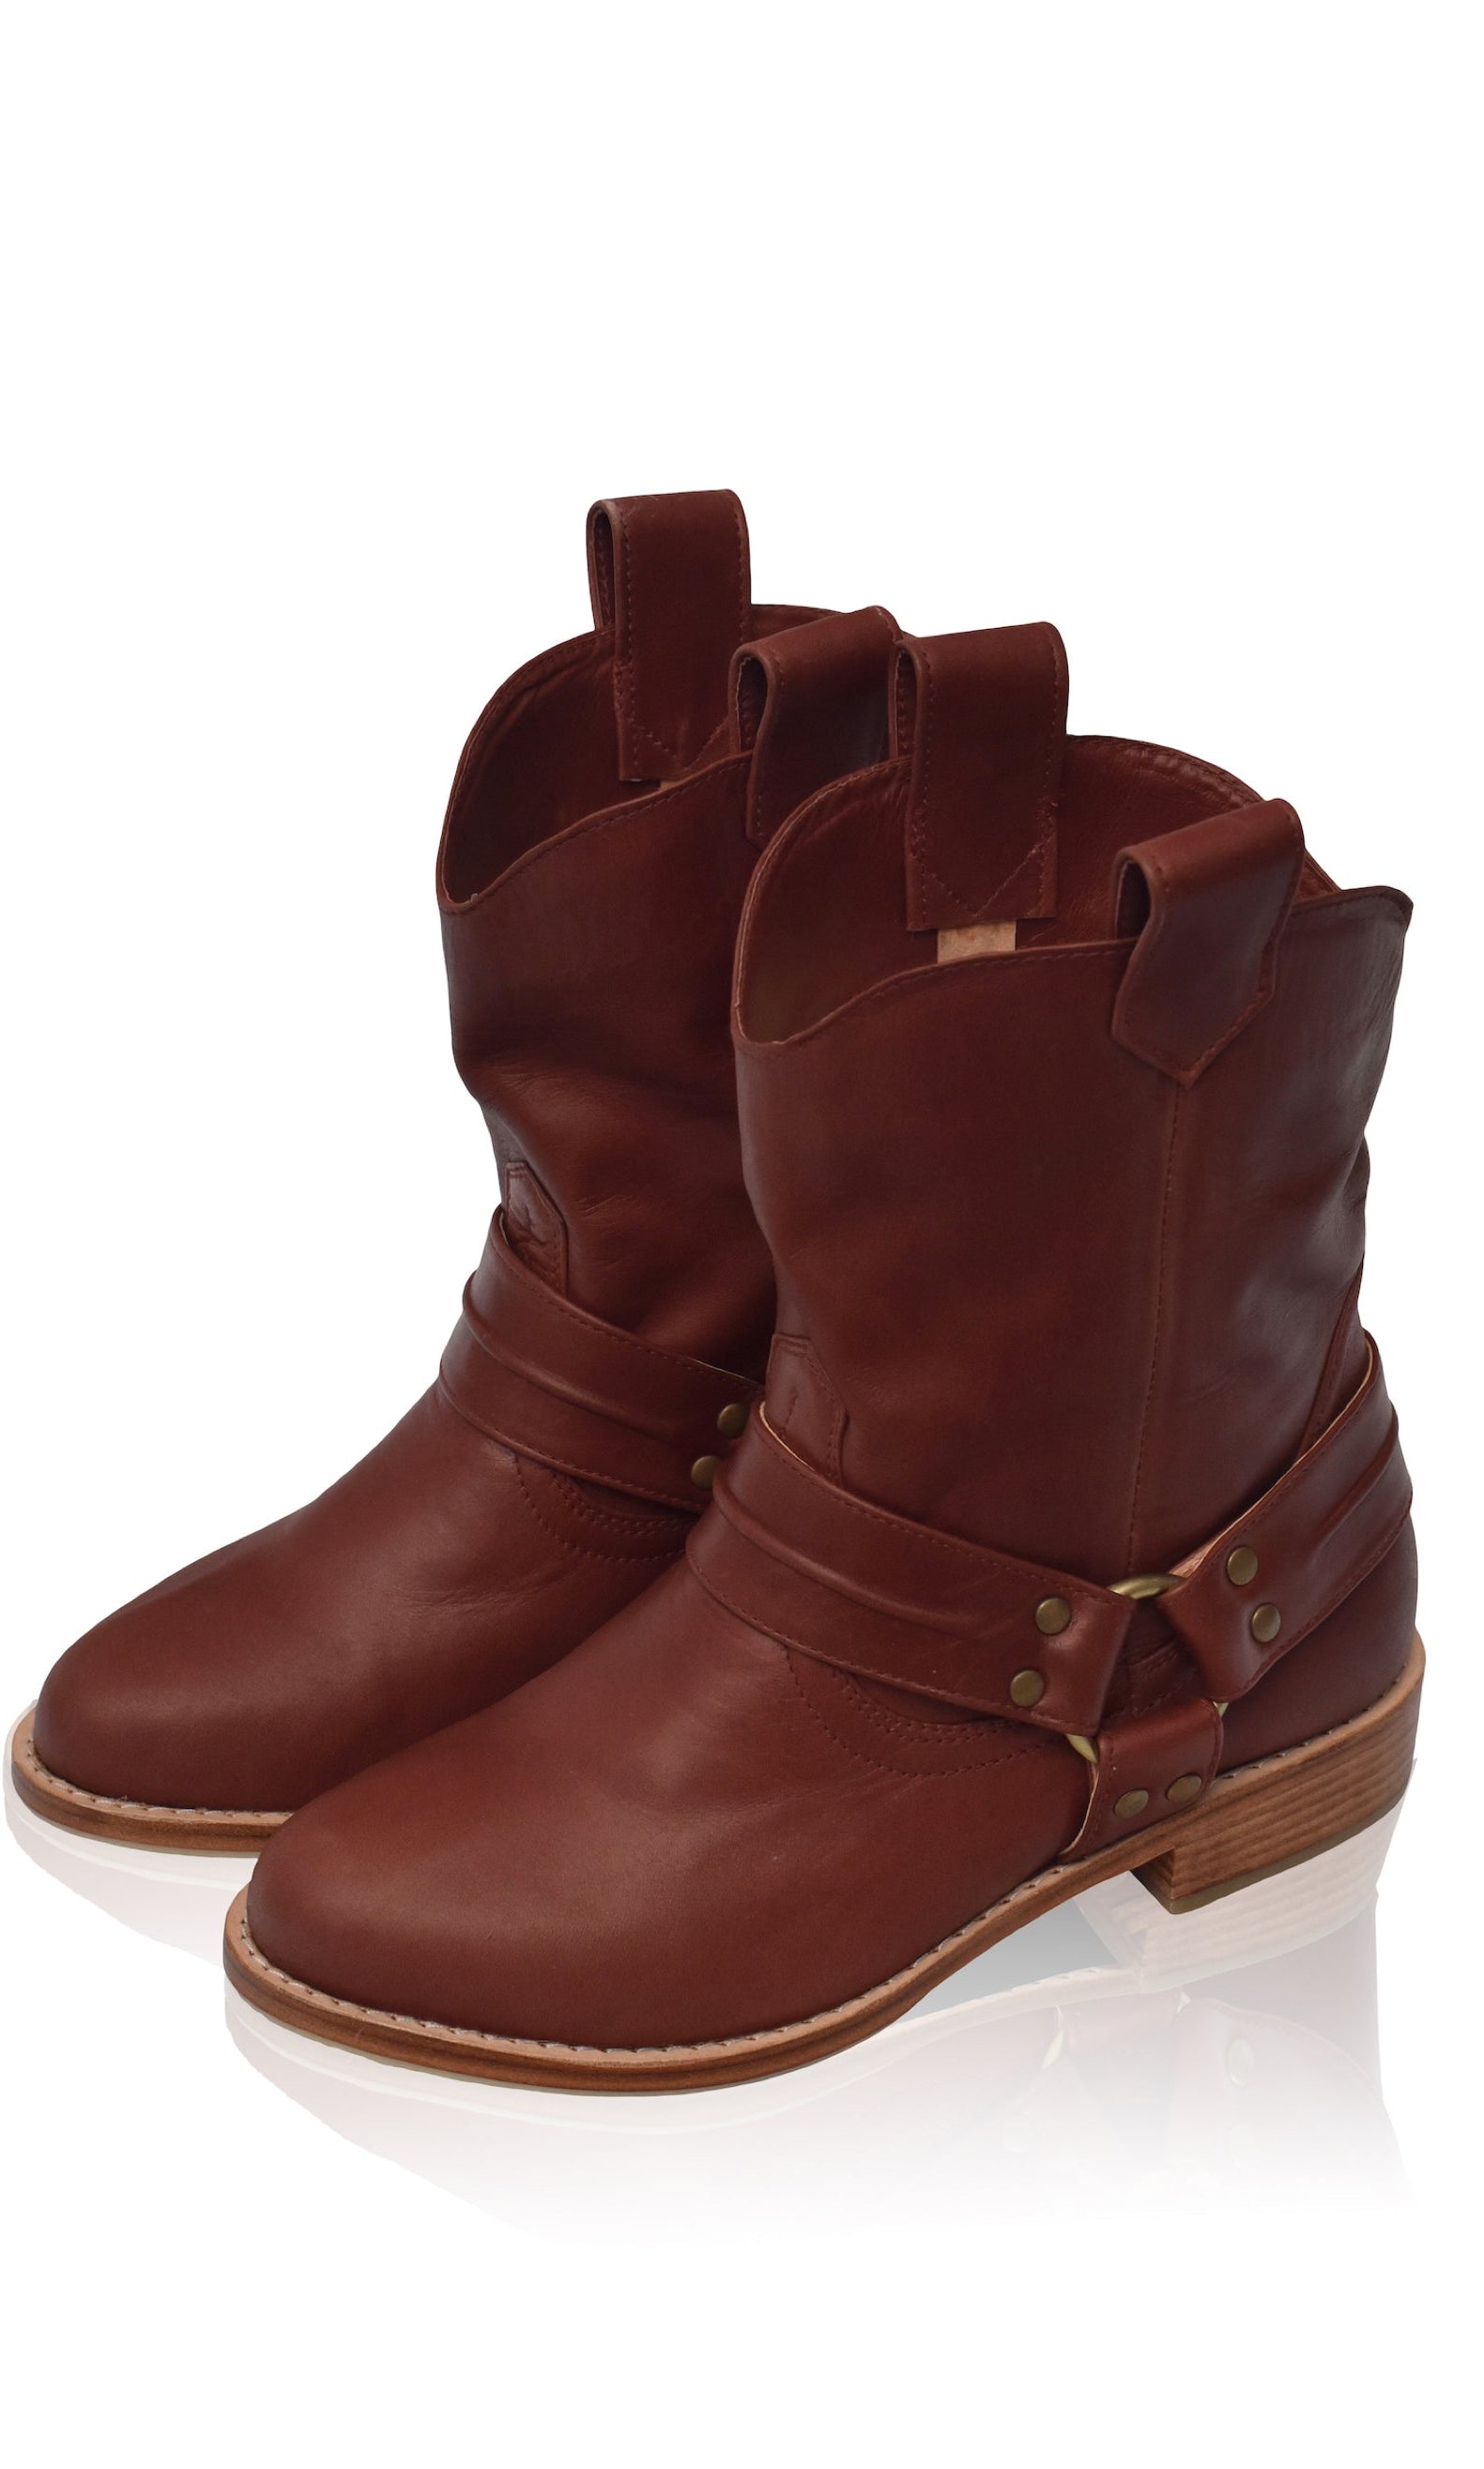 Cali Leather Boots (Sz. 5 & 7.5, 10) ELF